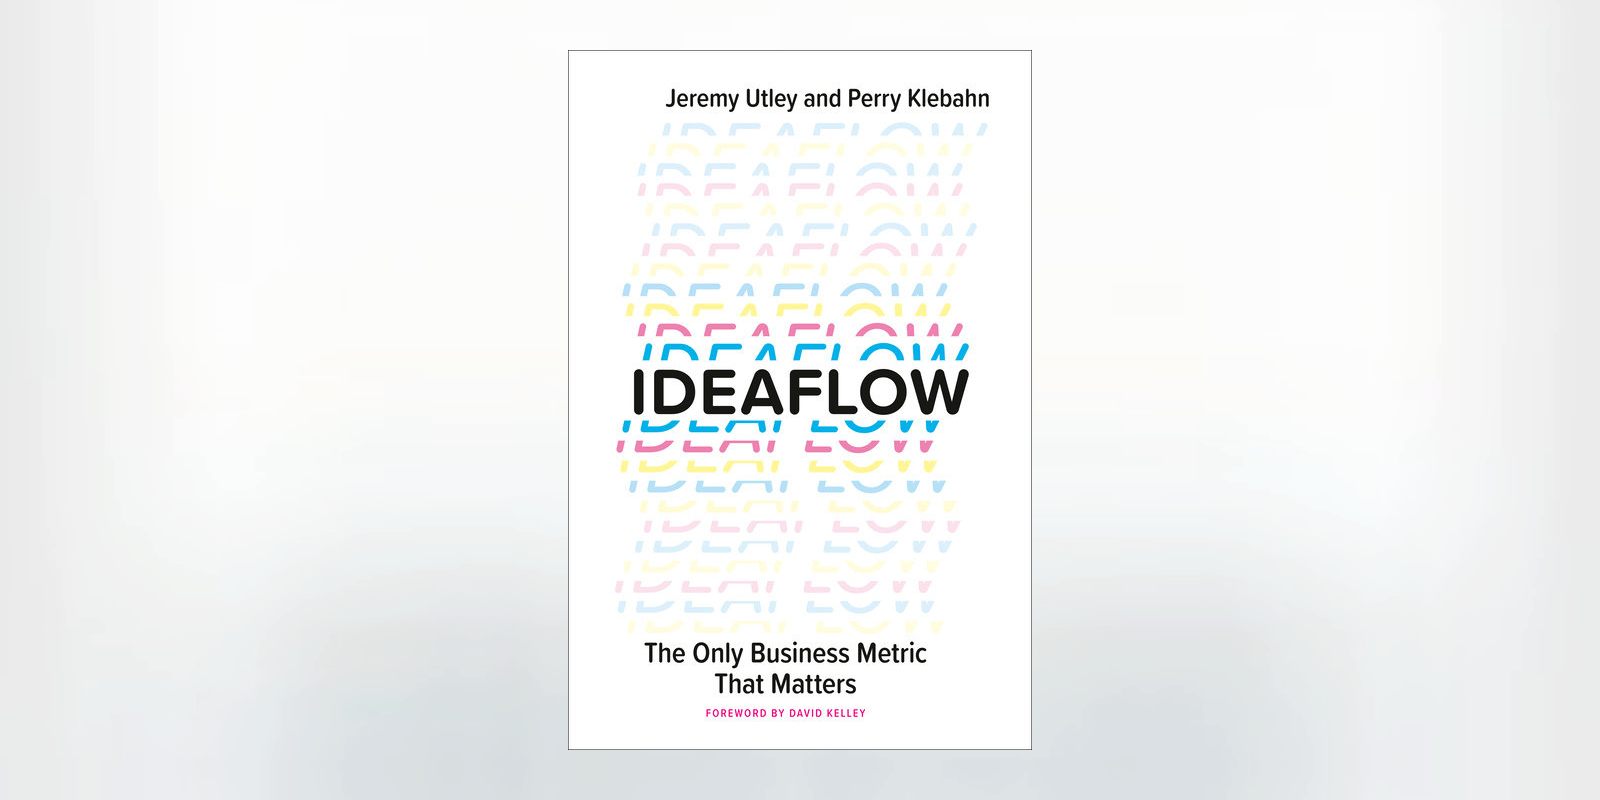 Teaching Entrepreneurship: Using <i>Ideaflow</i> in STEAM